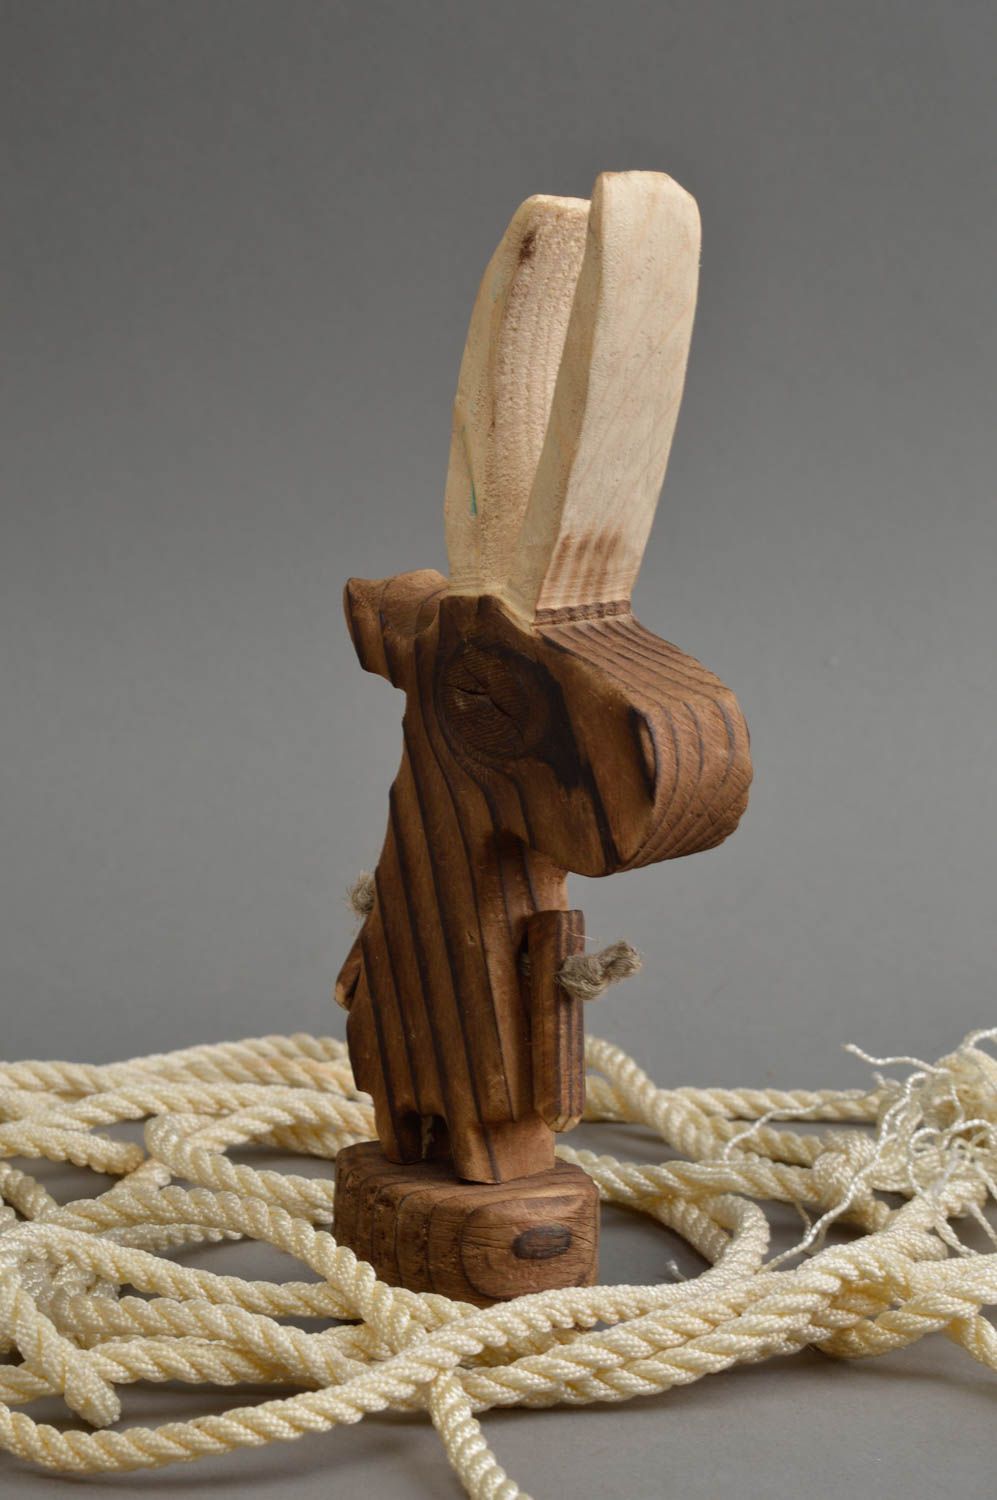 Крохотная статуэтка из дерева в виде козла авторский сувенир или декор фото 1